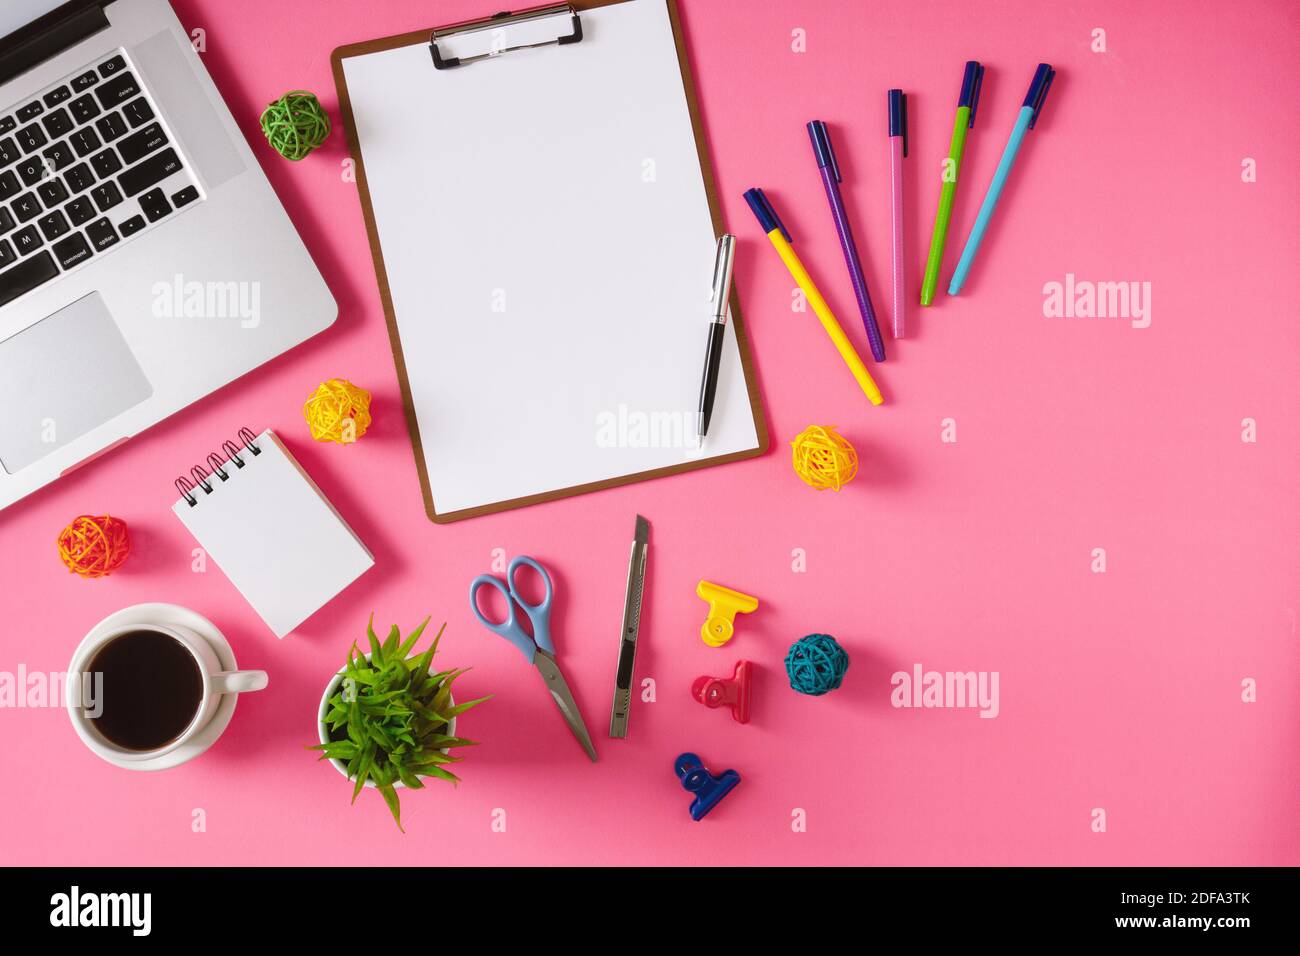 Vật dụng văn phòng trên nền màu hồng - Tạo ra một không gian làm việc thú vị bằng cách sáng tạo với các vật dụng và phụ kiện văn phòng trên nền màu hồng. Các vật dụng văn phòng đa dạng sẽ giúp cho quá trình làm việc của bạn trở nên dễ chịu hơn. Hãy xem những bức hình ảnh liên quan và có được cảm hứng để tạo ra một không gian làm việc độc đáo.